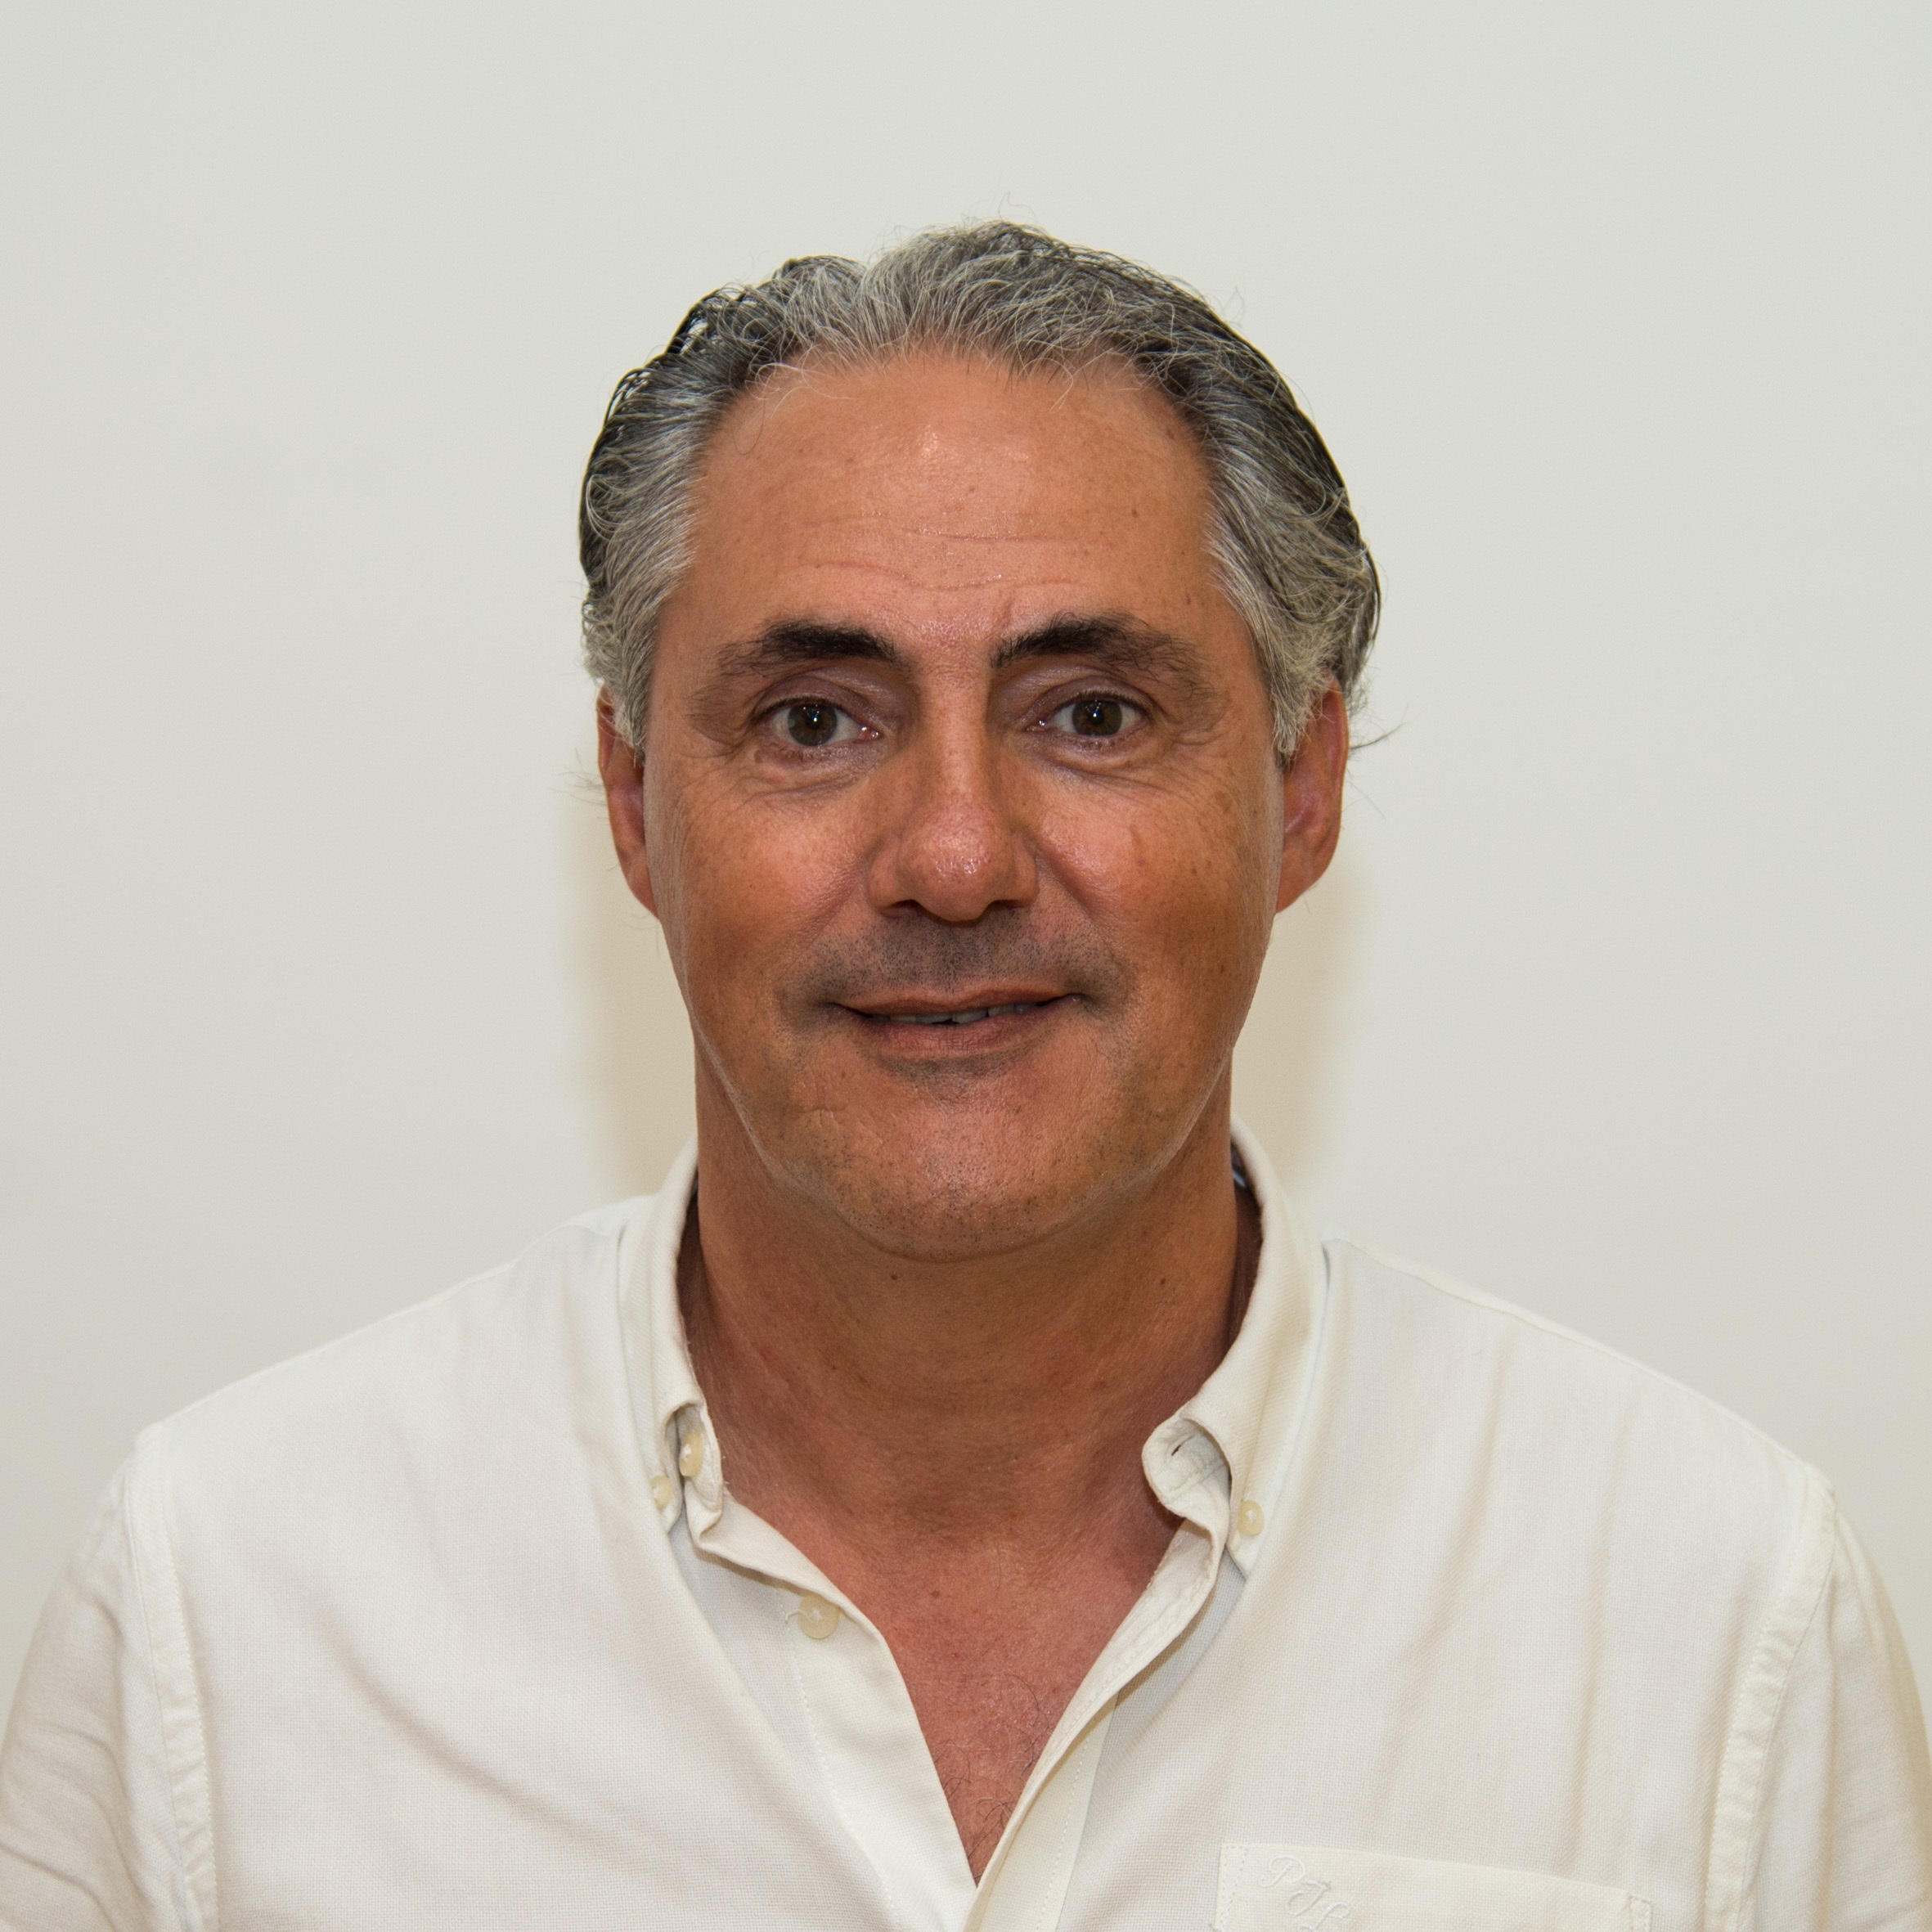 Alonso Martinez, Jose Manuel